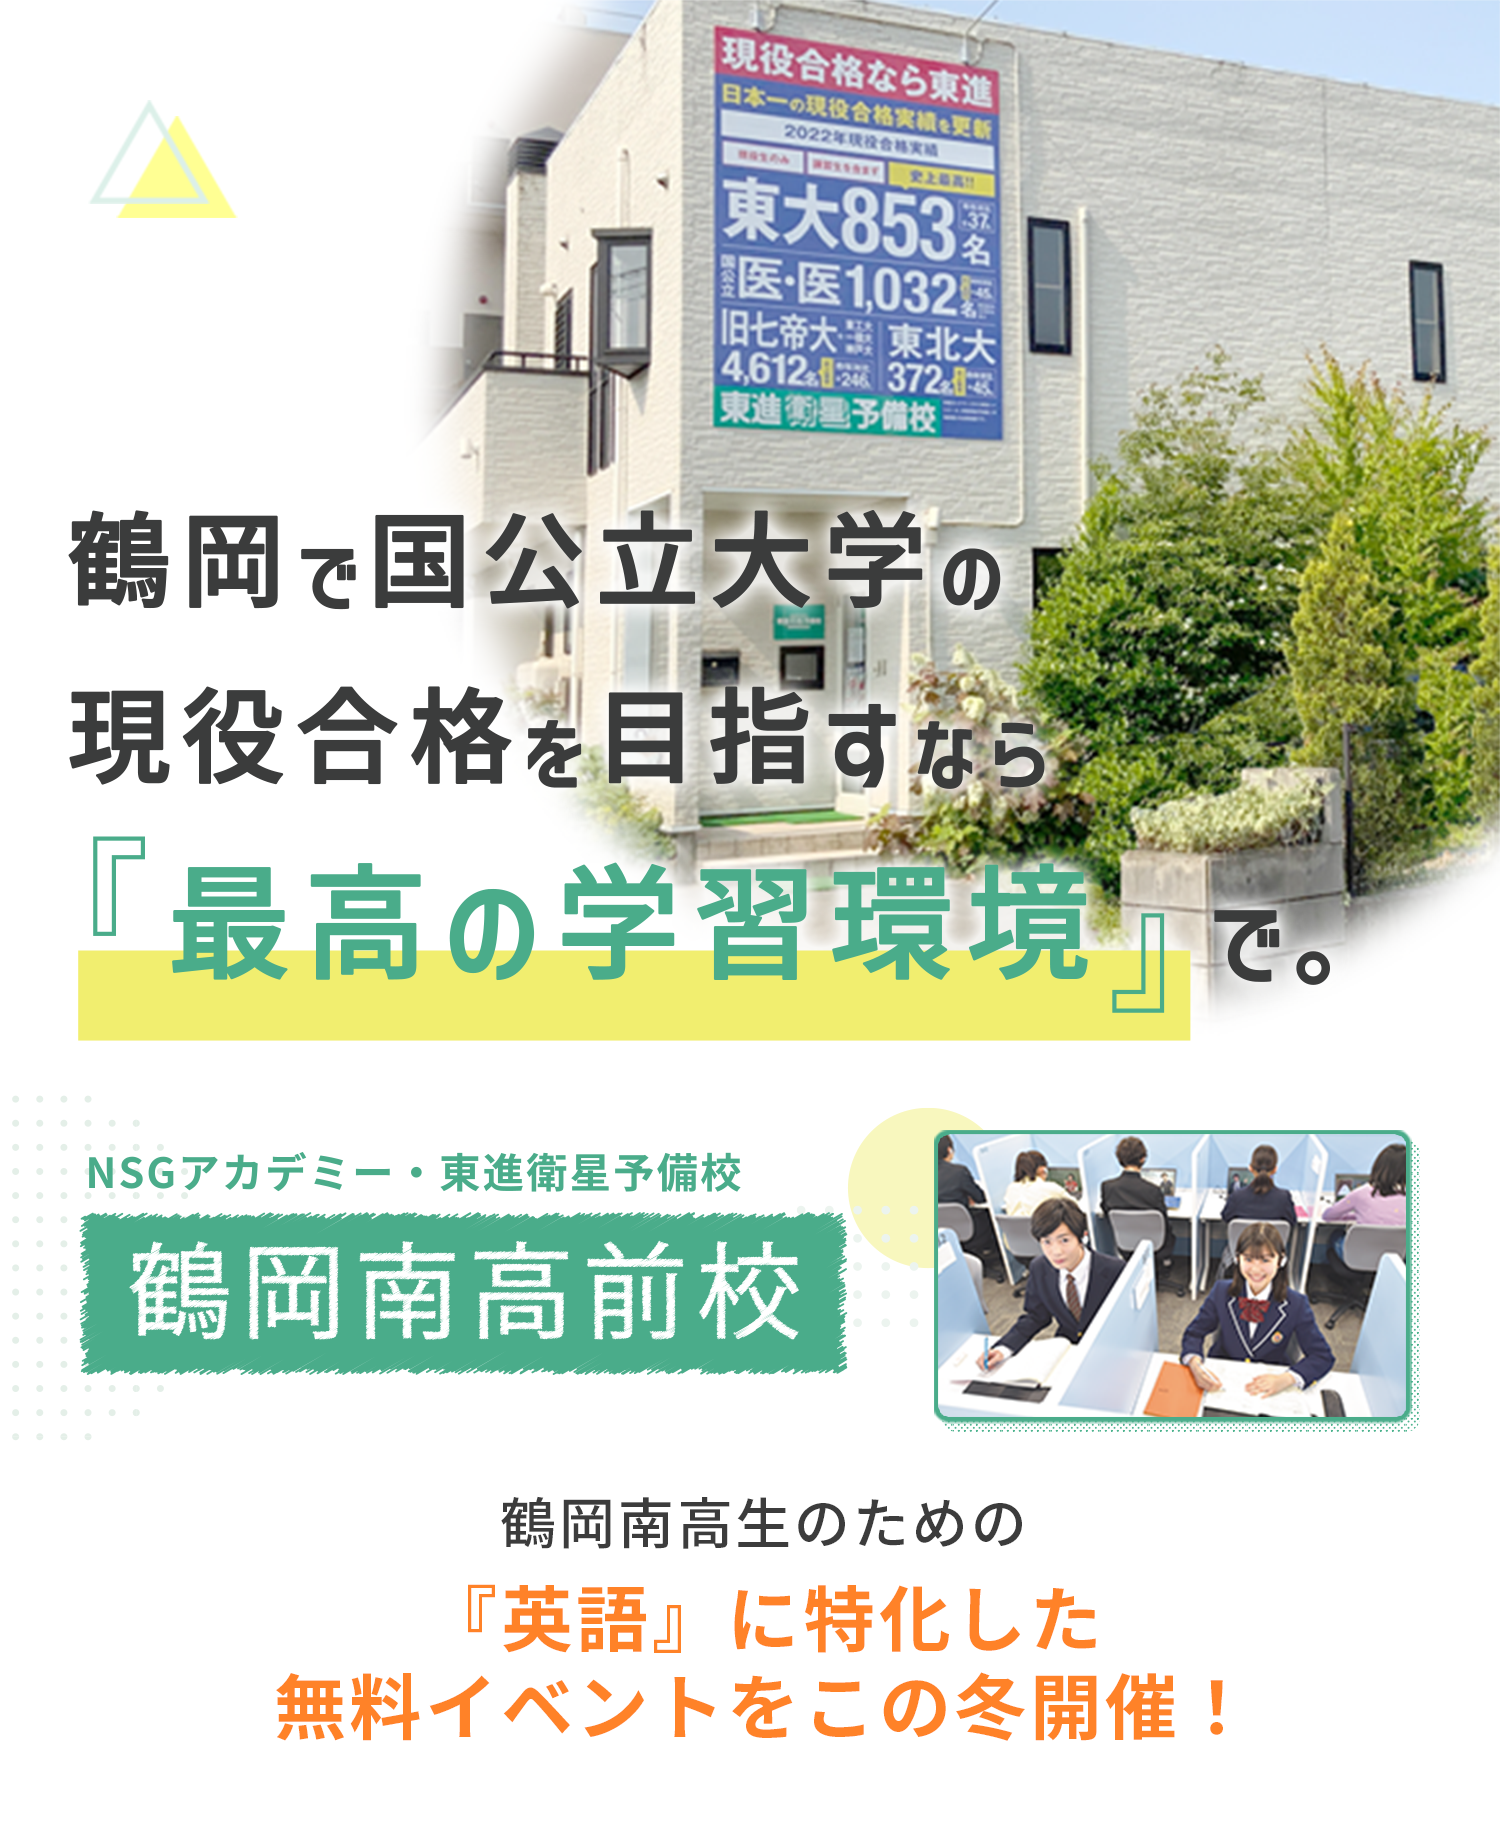 鶴岡で国公立大学を目指すなら「最高の学習環境」で。 NSGアカデミー・東進衛星予備校 鶴岡南高前校